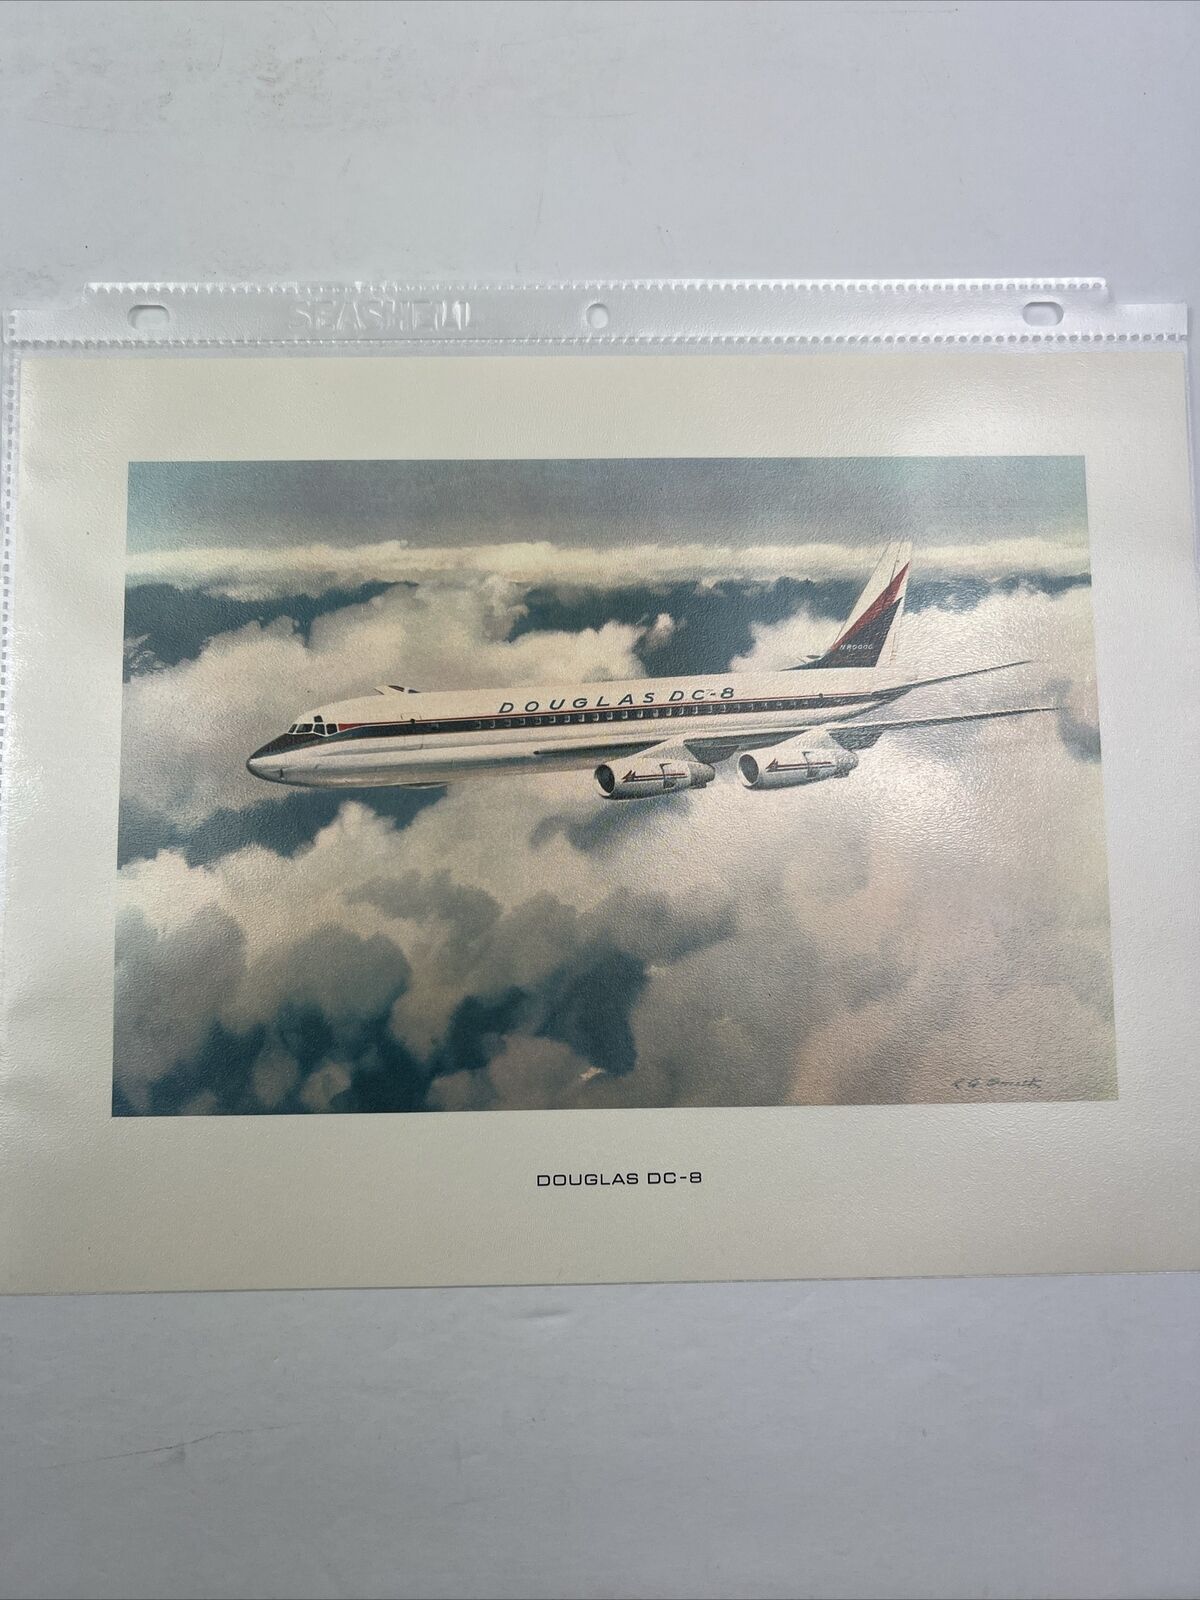 Douglas’s DC-8 11x8.5 Picture/Print. Description On Back